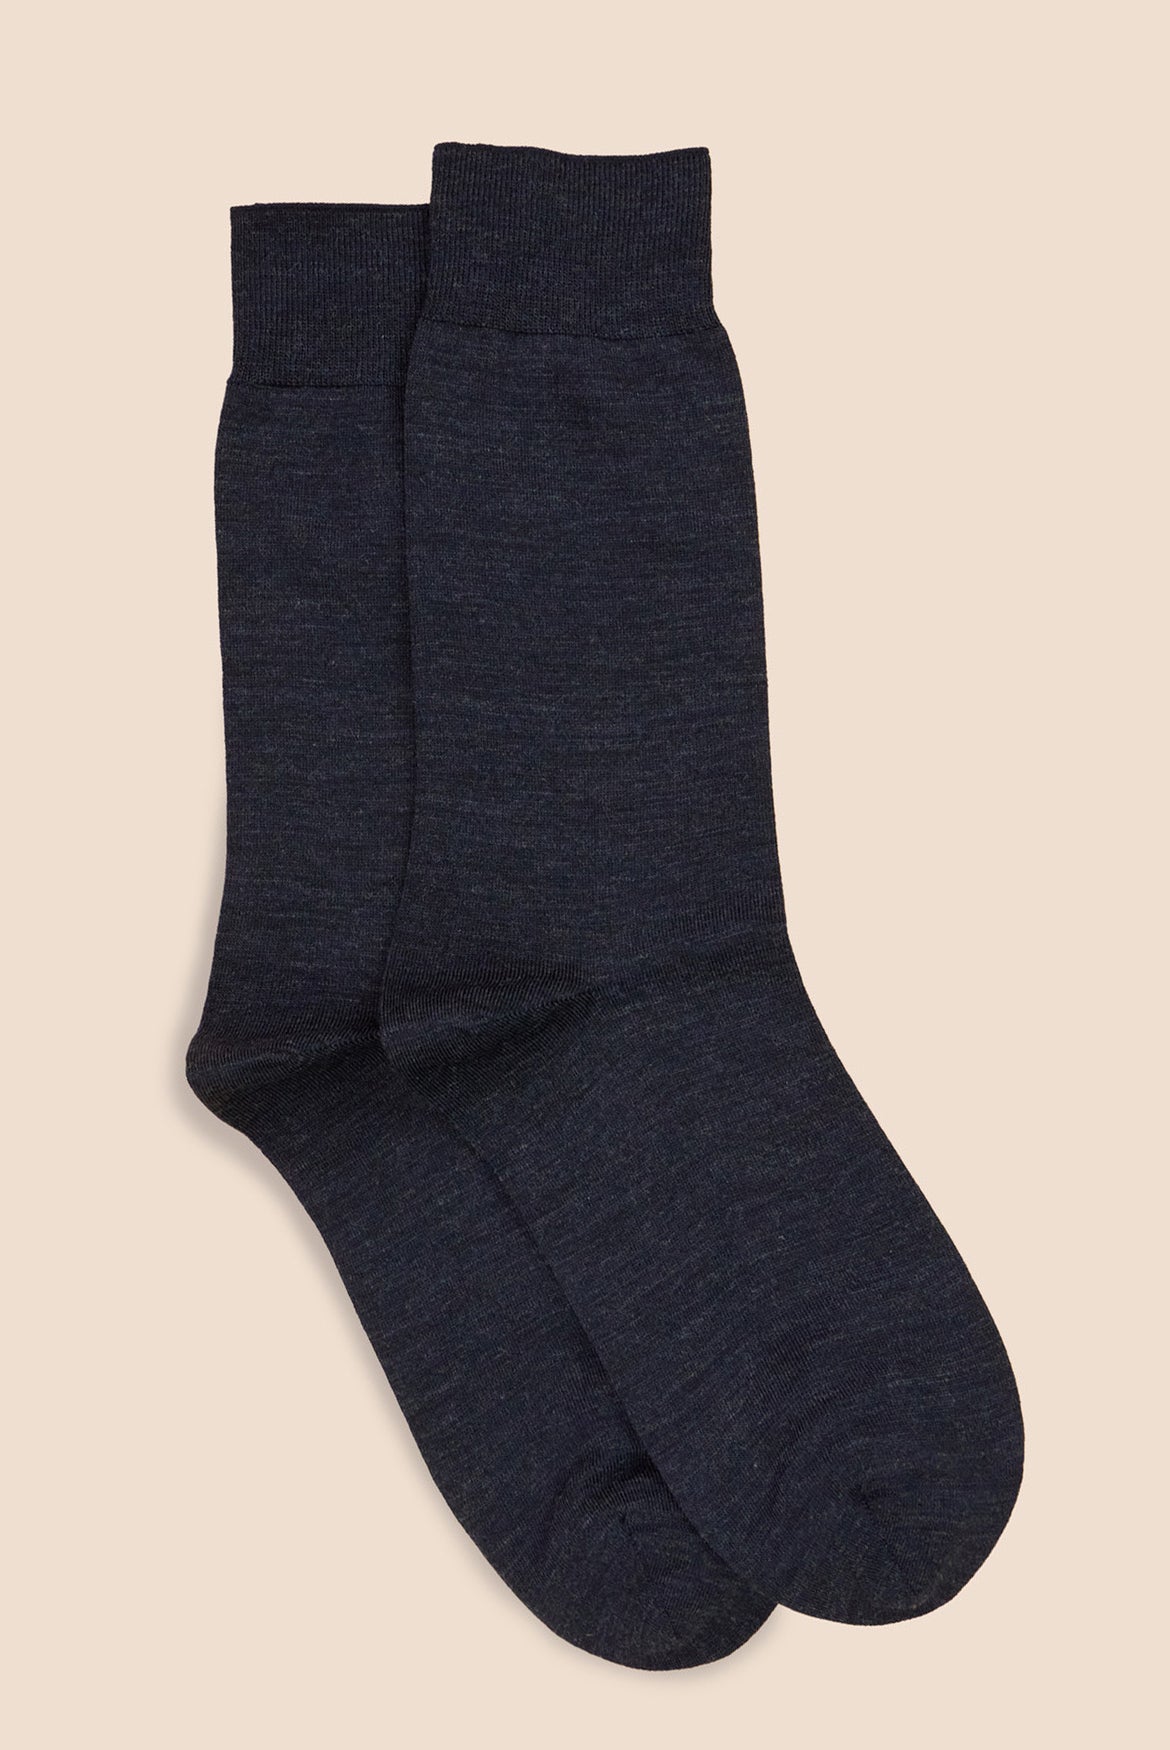 Pétrone chaussettes laine mérinos bleu chiné homme